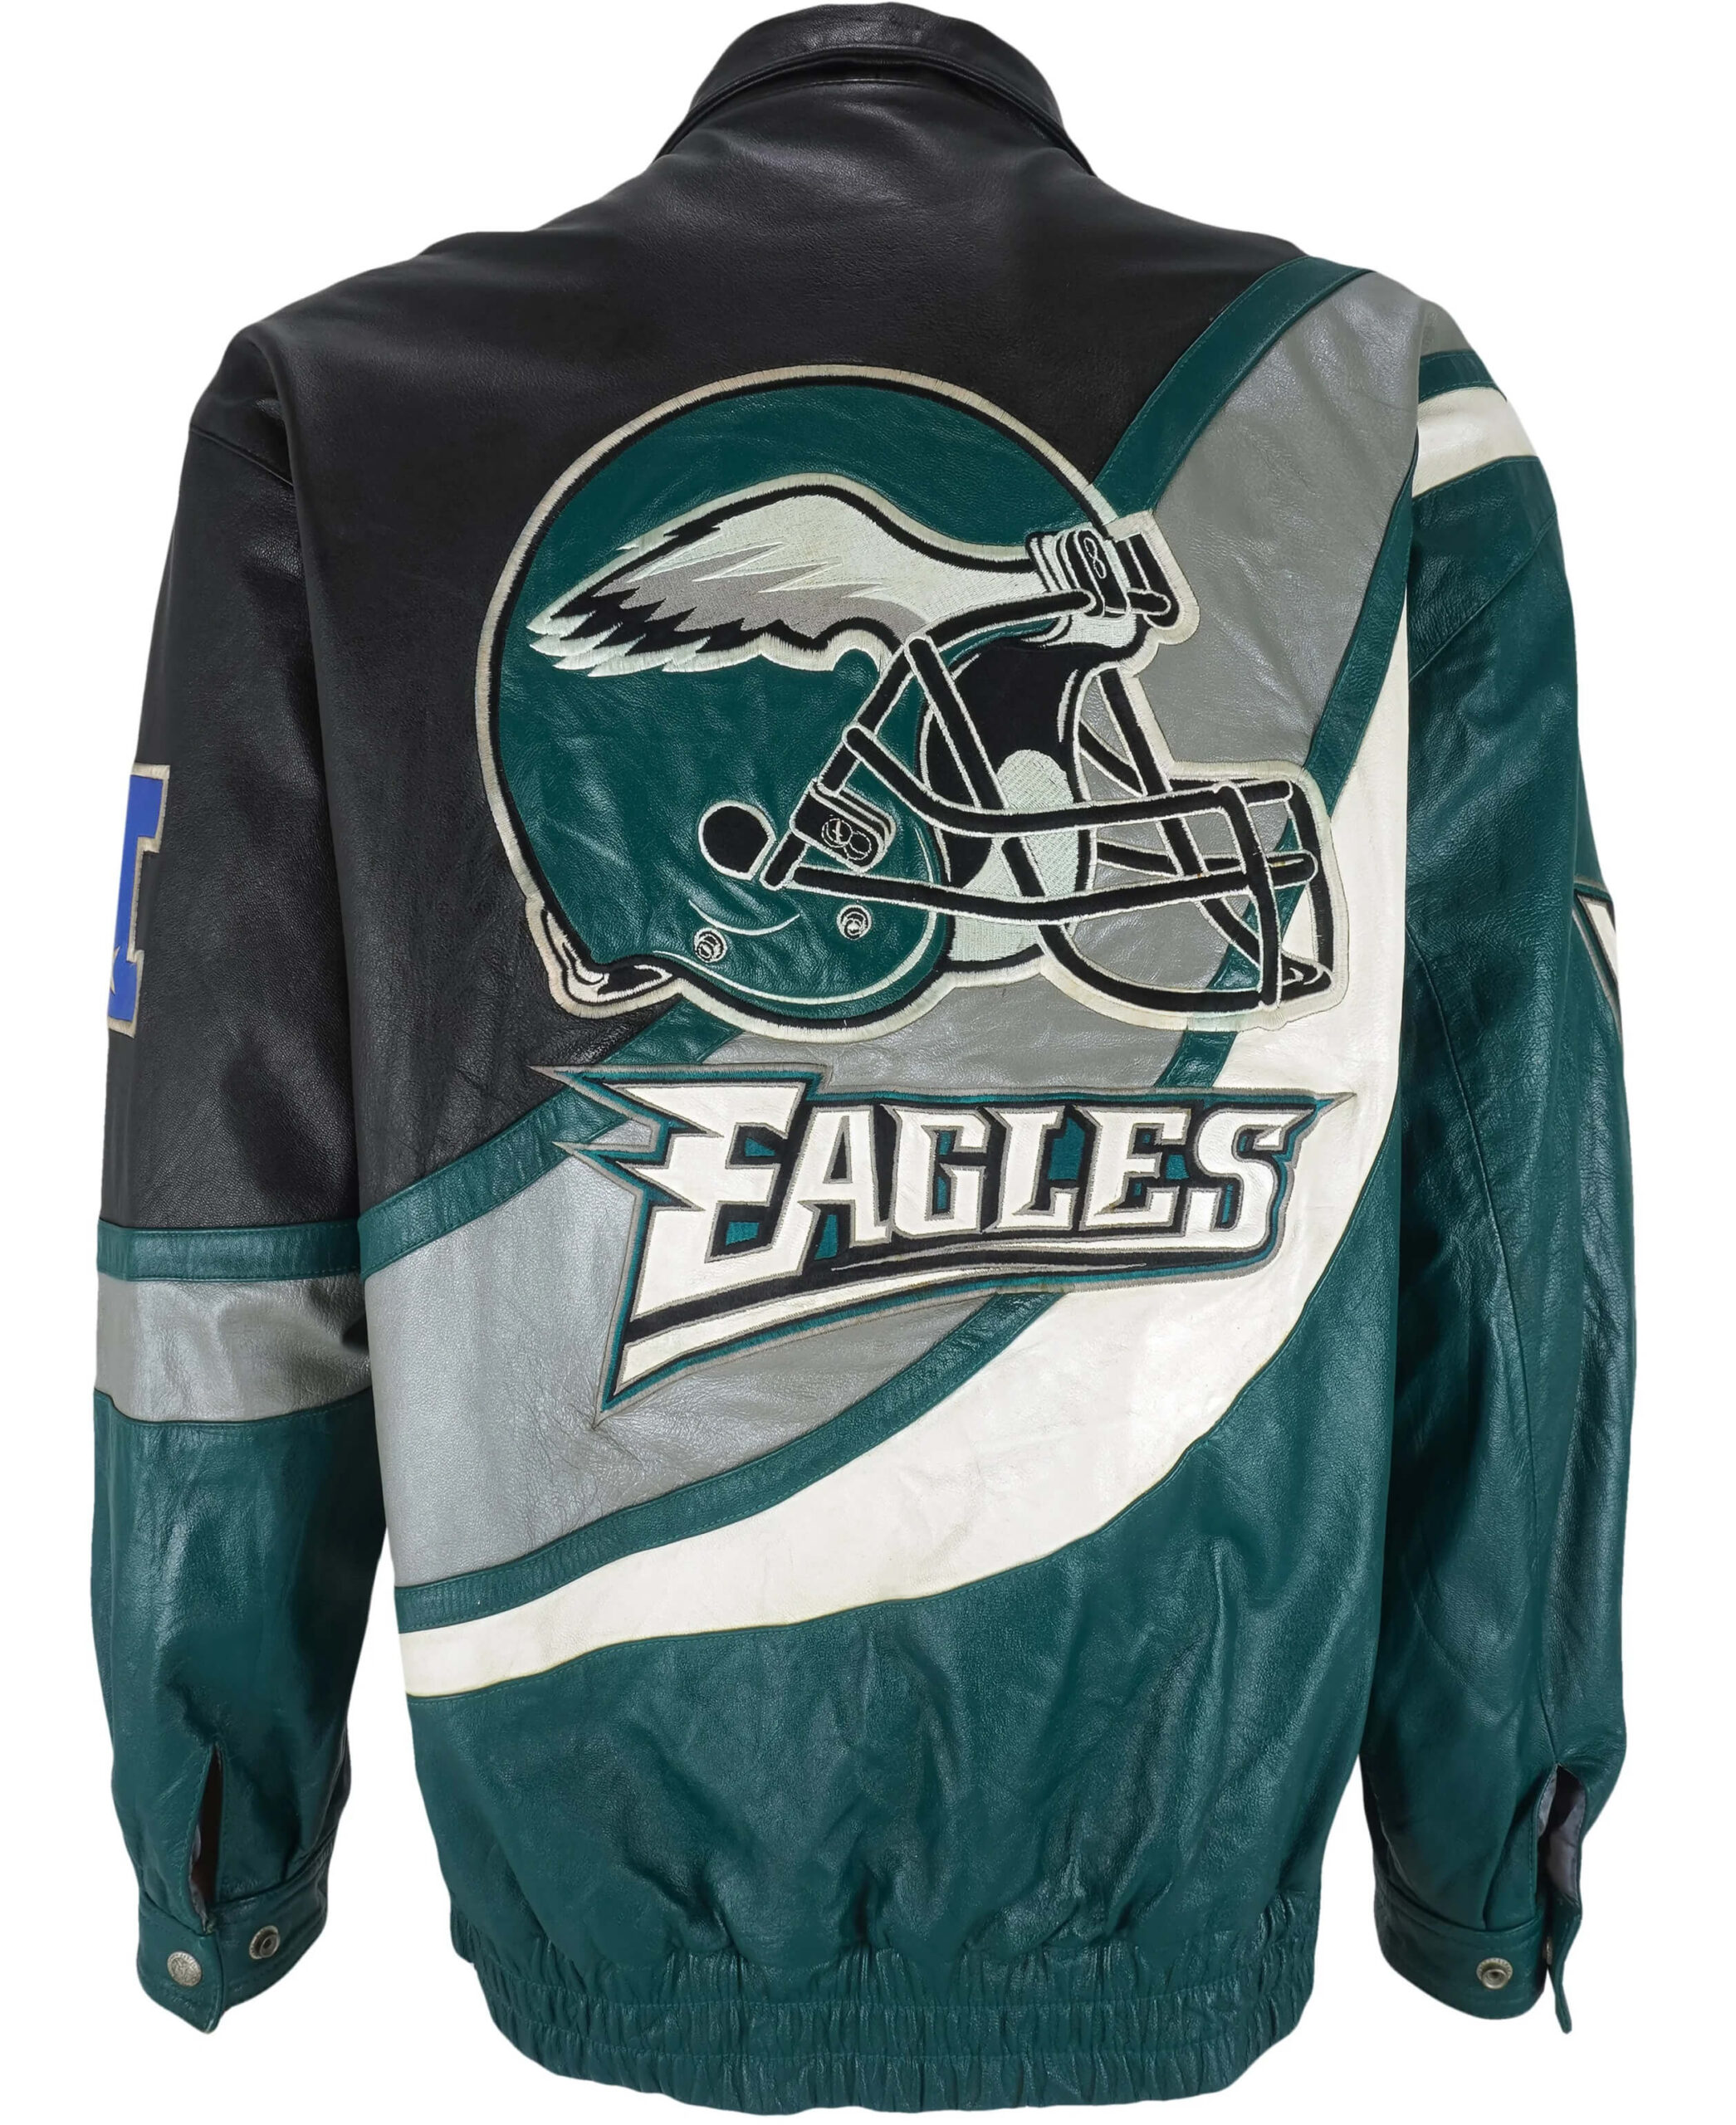 vintage eagles jacket